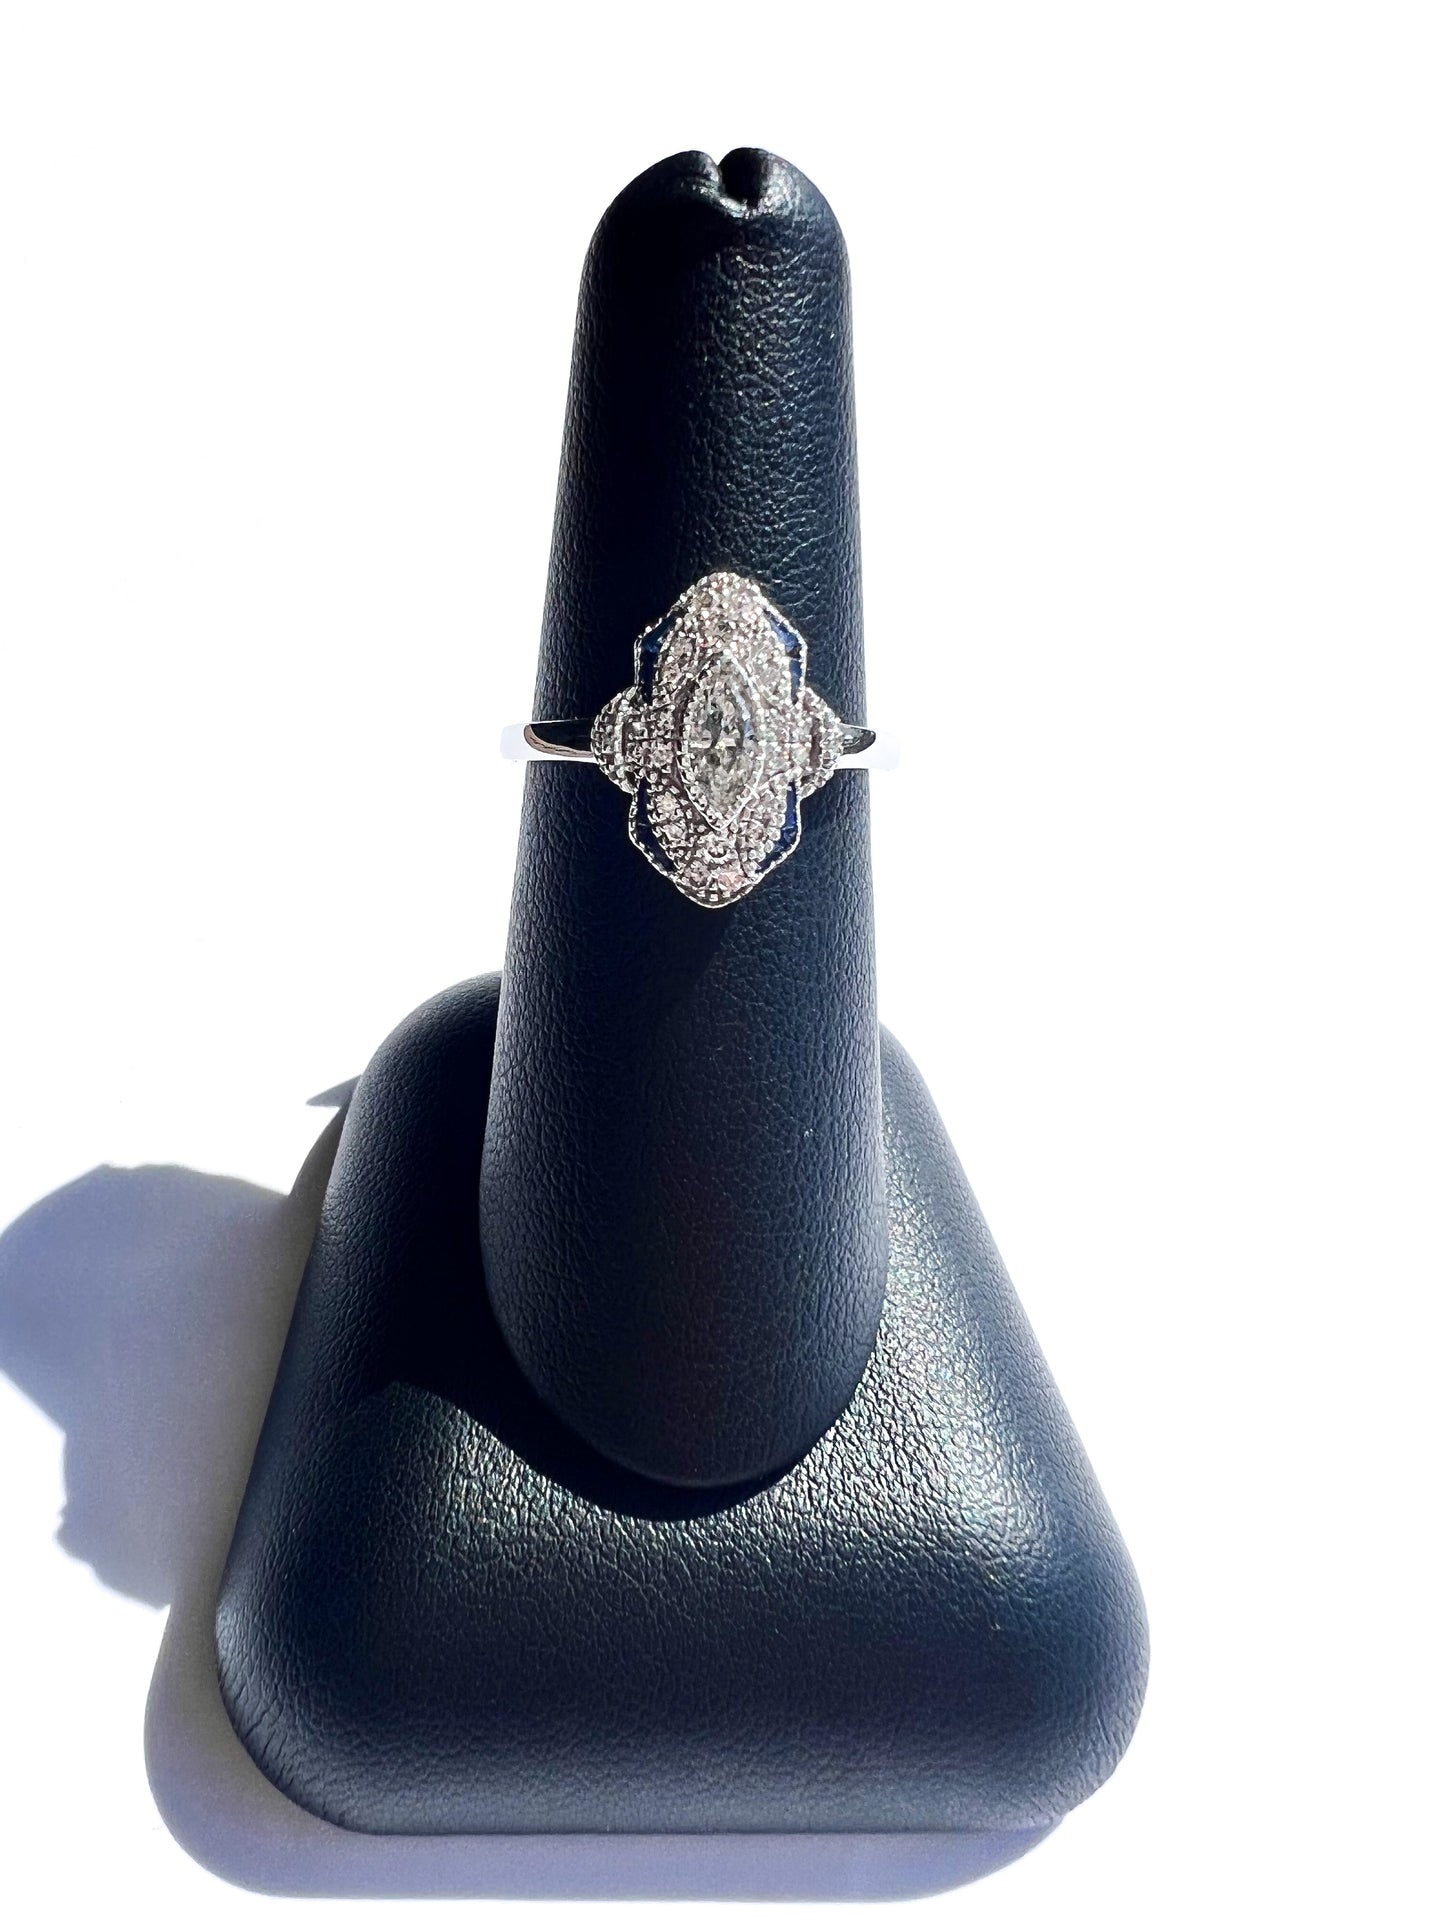 New Vintage Inspired 14K White Gold Diamond & Blue Sapphire Ring